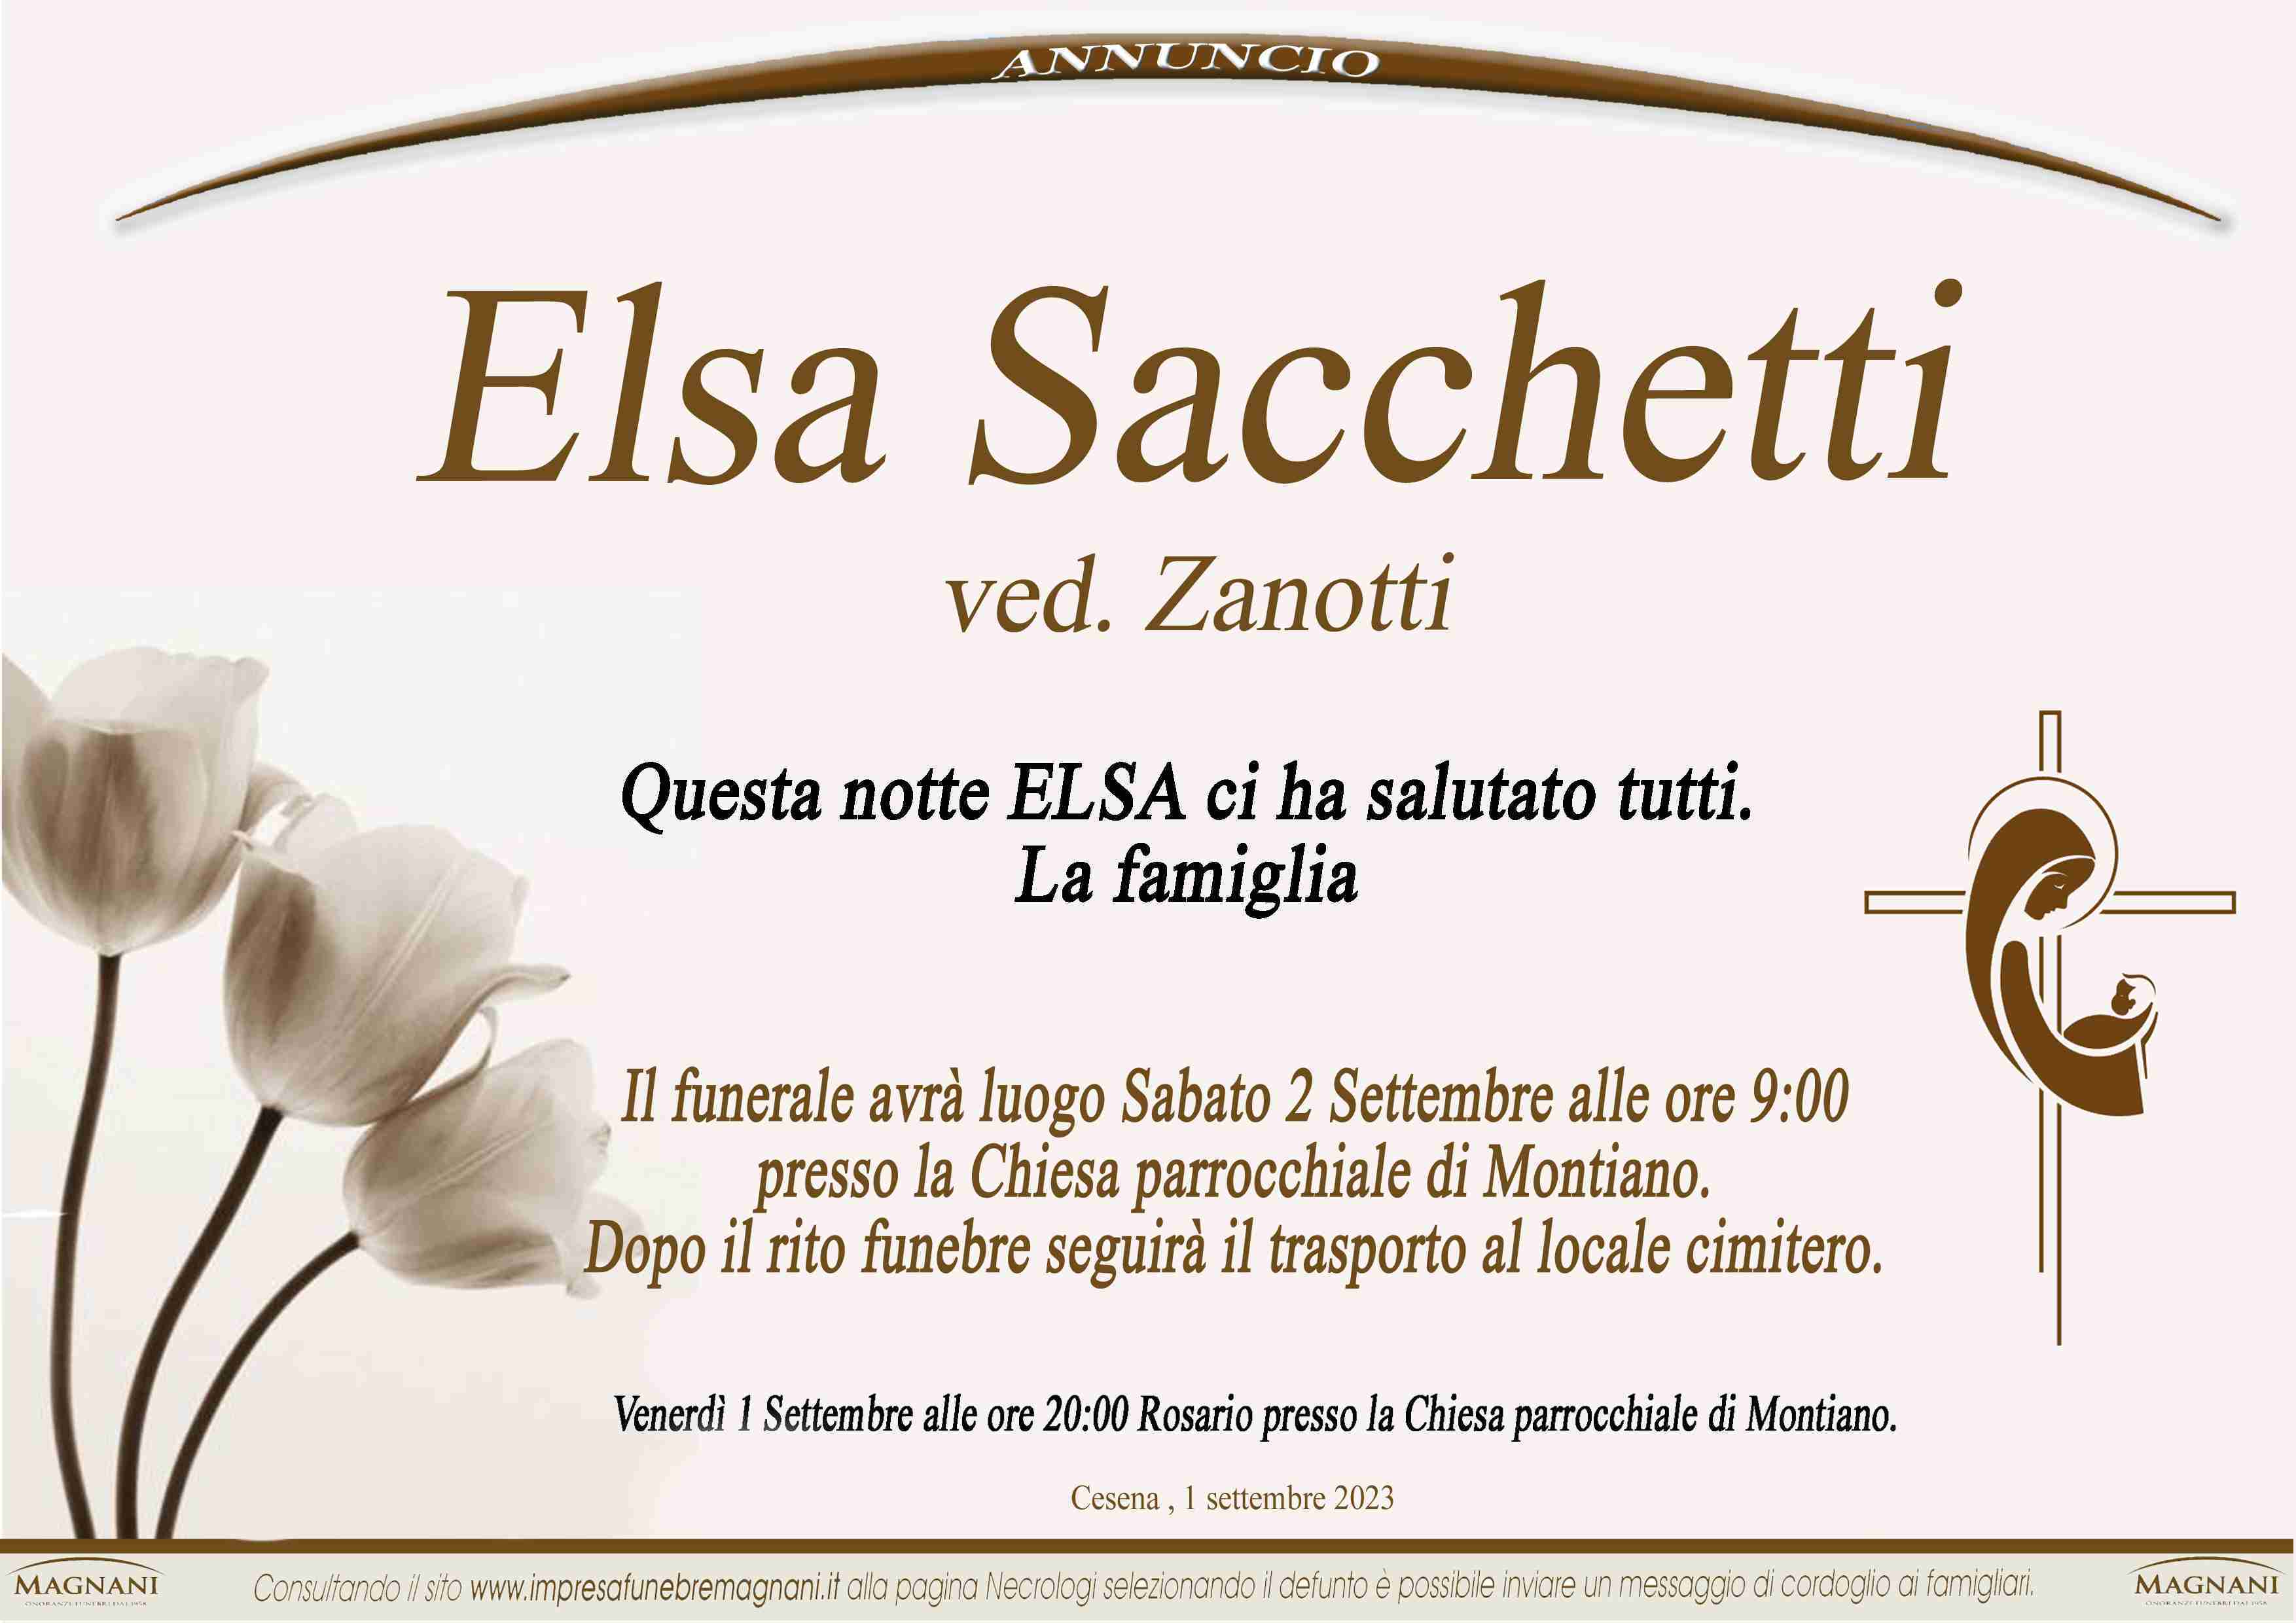 Elsa Sacchetti